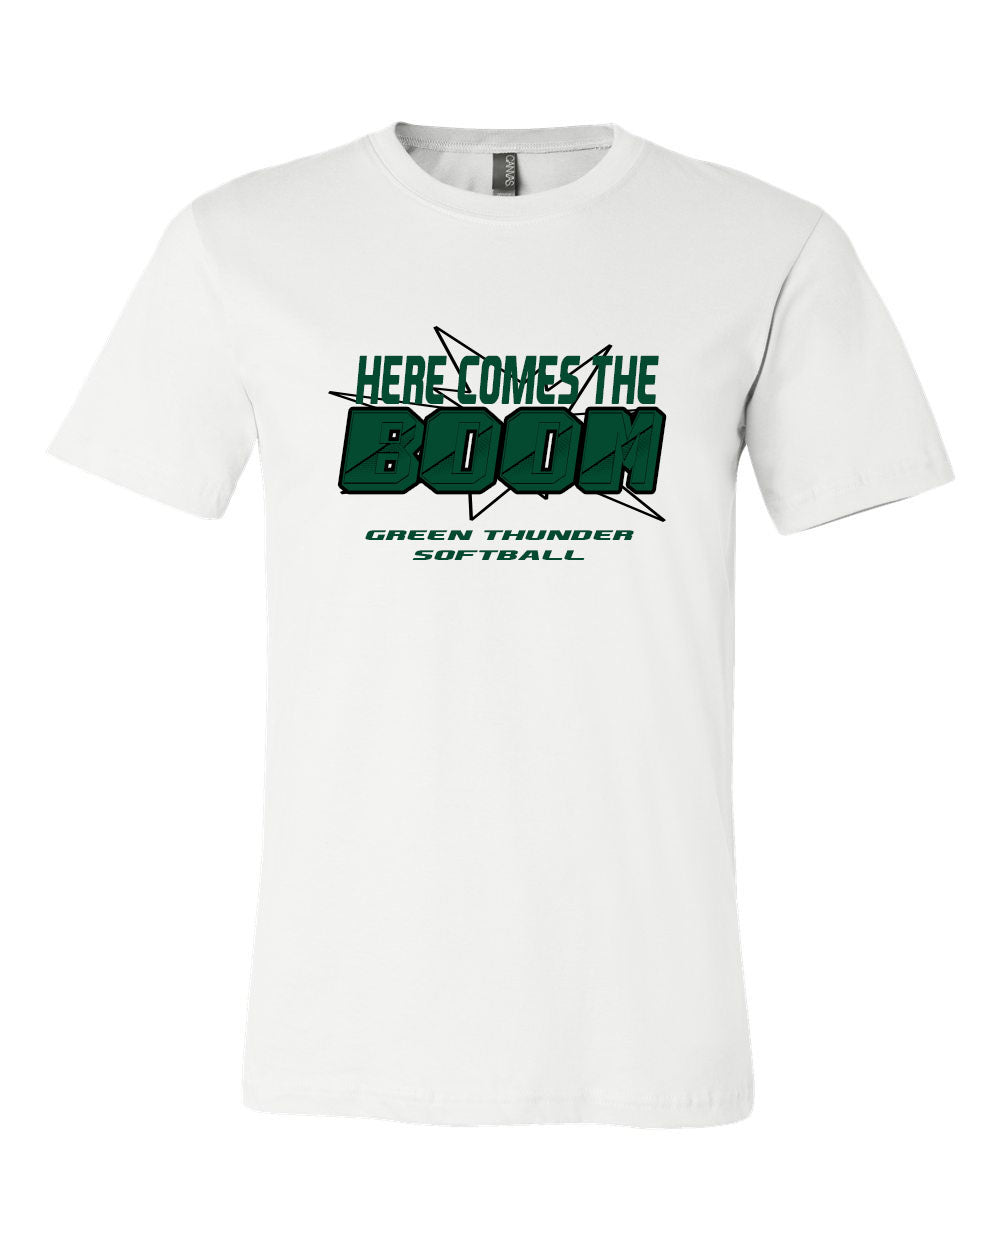 Green Thunder Softball Design 3 T-Shirt